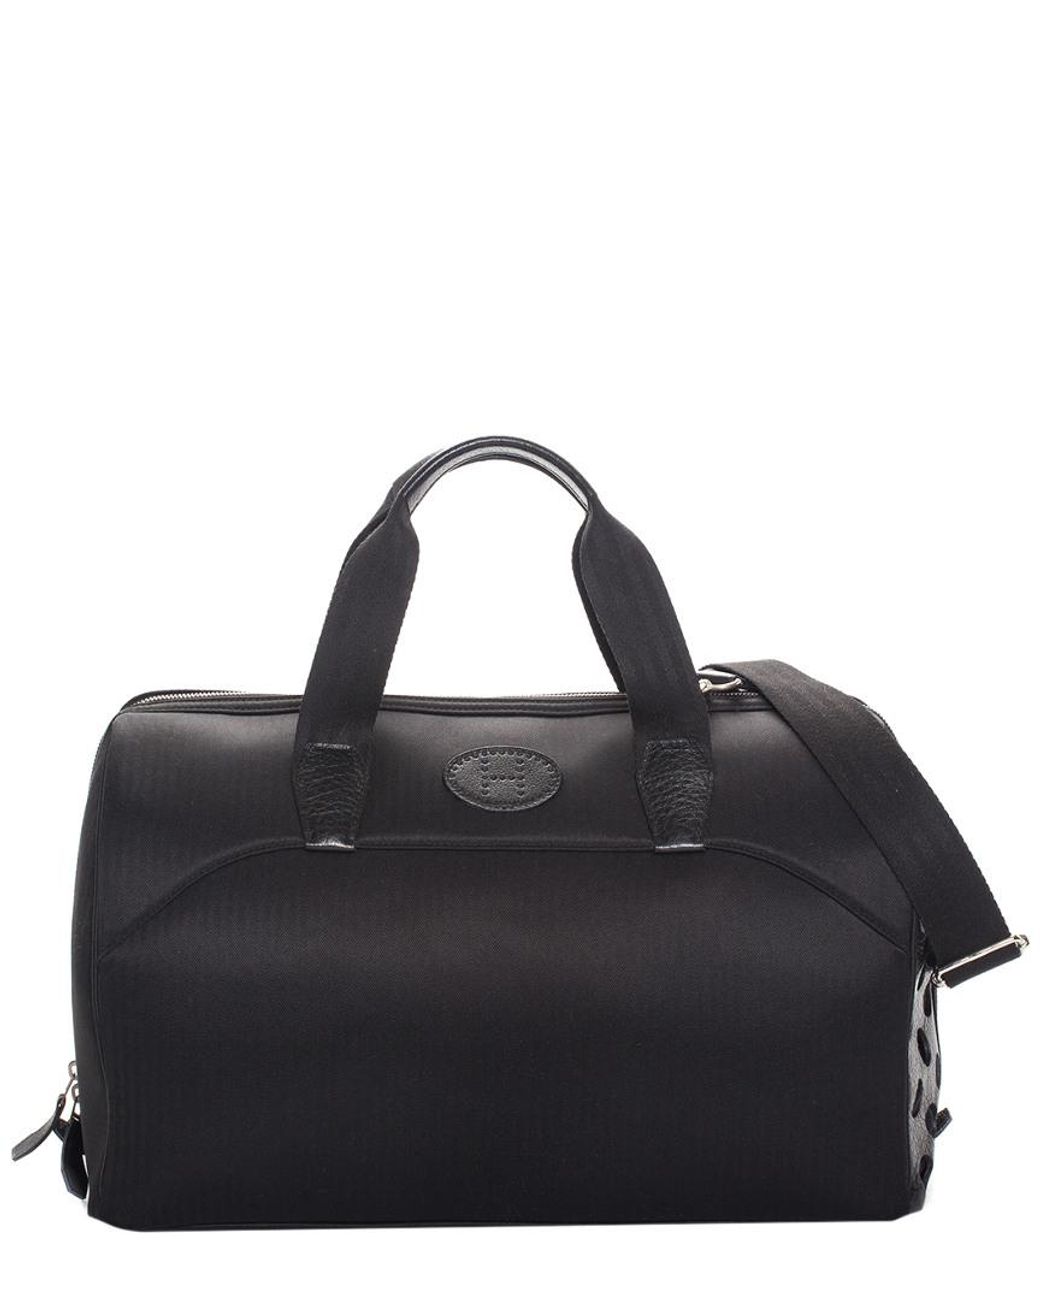 Hermès Black Leather Toutou Pet Carrier | Lyst